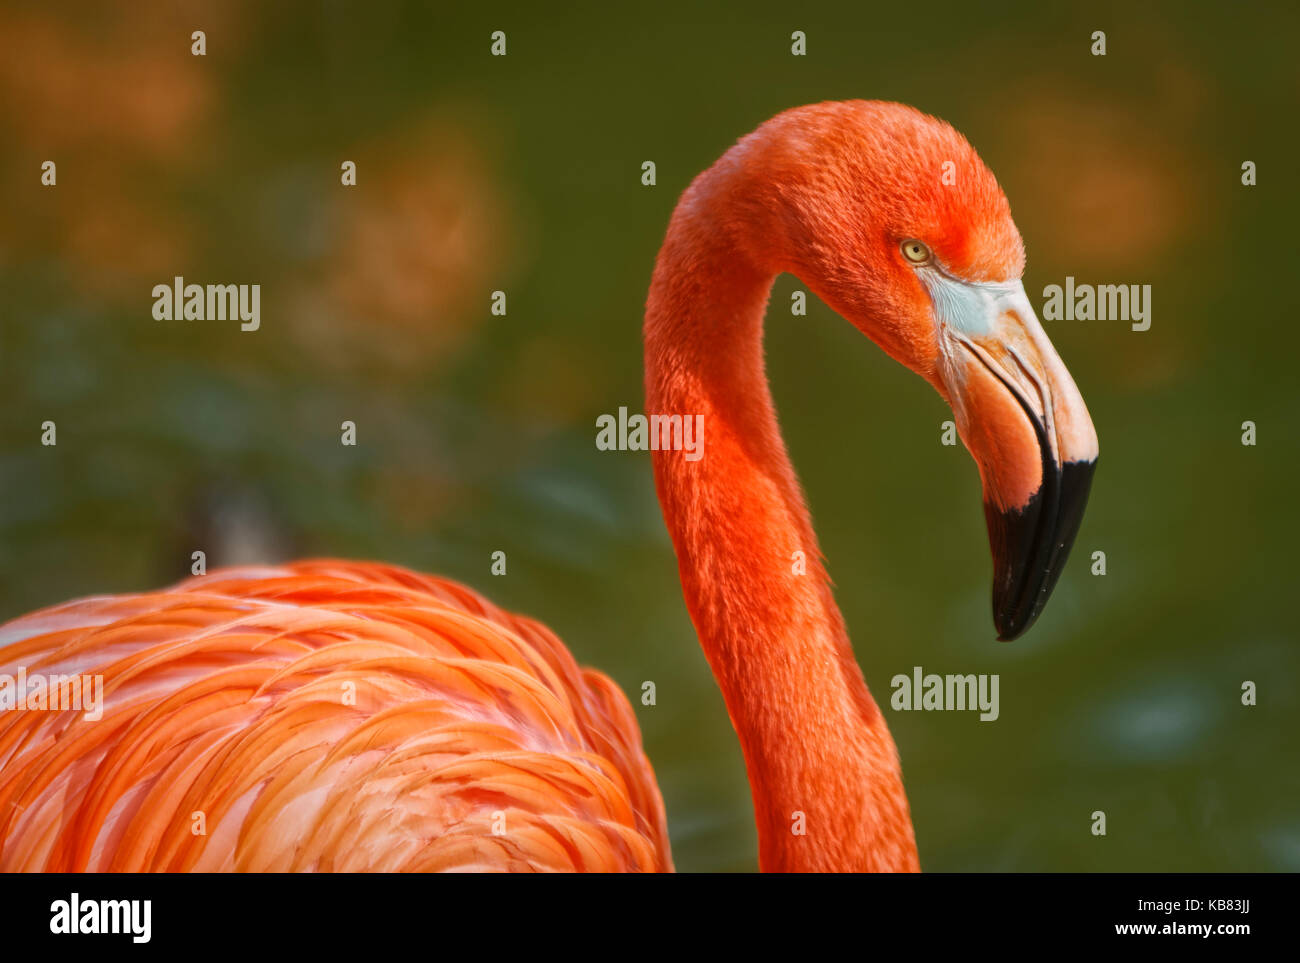 Flamingo portrait anzeigen Schnabel Kopf-, Hals und ein Teil des Körpers mit unscharfen Hintergrund Stockfoto